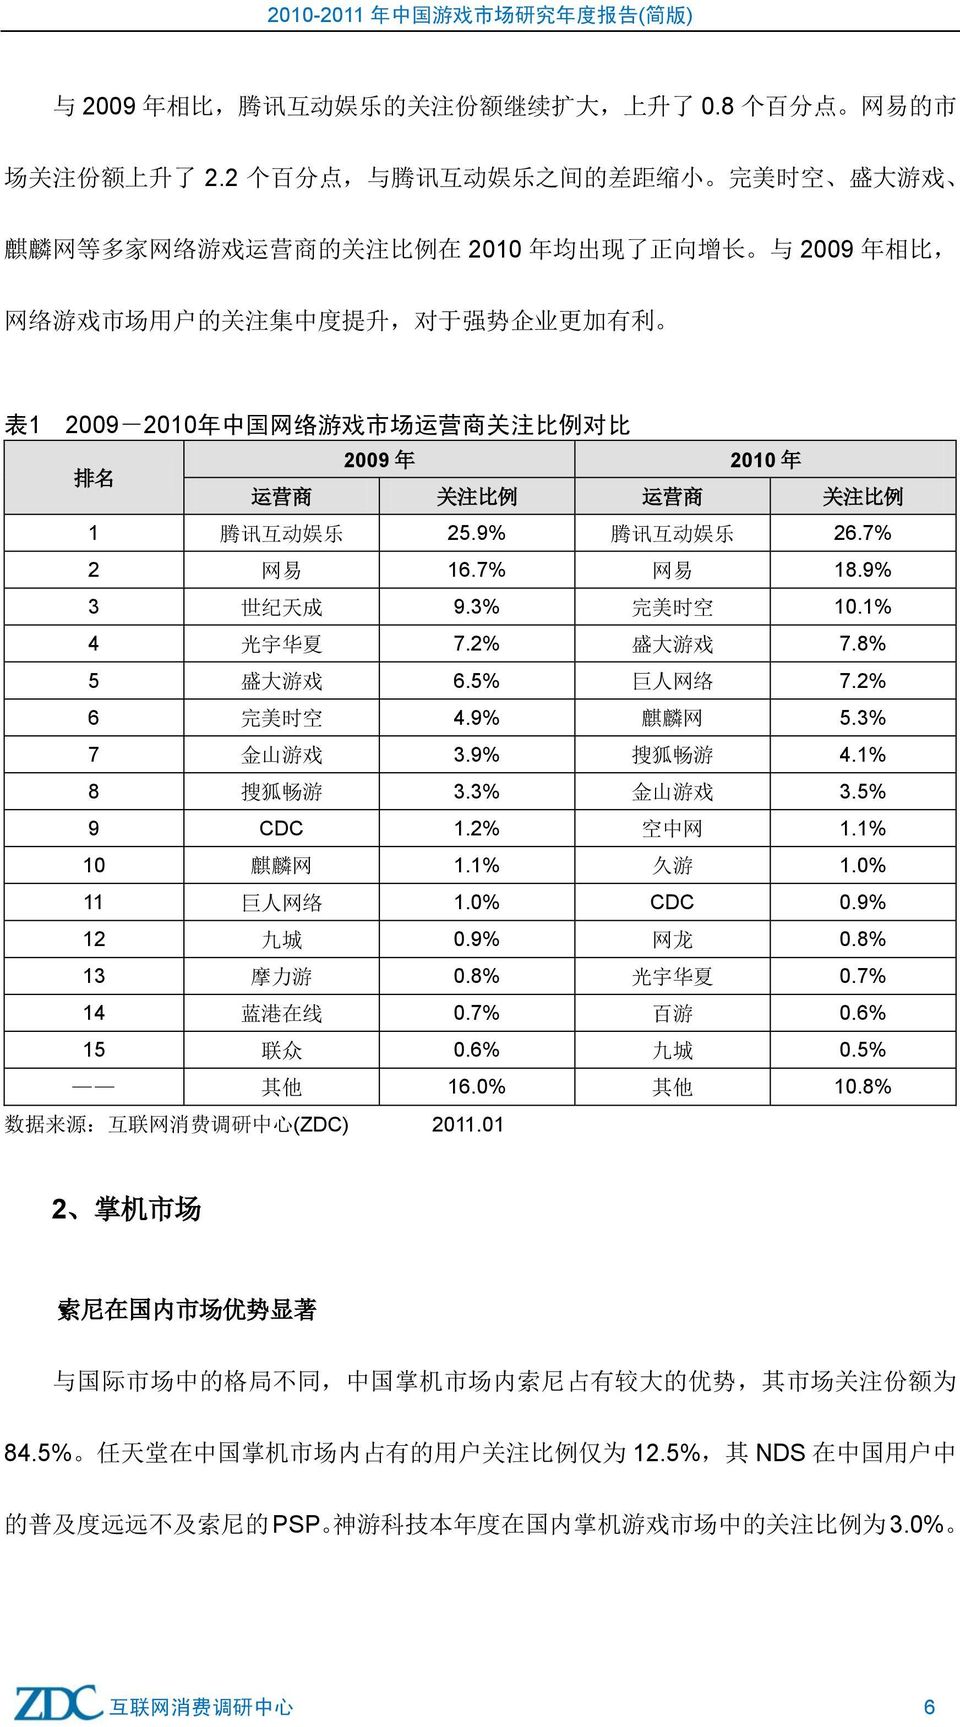 中 国 网 络 游 戏 市 场 运 营 商 关 注 比 例 对 比 排 名 2009 年 2010 年 运 营 商 关 注 比 例 运 营 商 关 注 比 例 1 腾 讯 互 动 娱 乐 25.9% 腾 讯 互 动 娱 乐 26.7% 2 网 易 16.7% 网 易 18.9% 3 世 纪 天 成 9.3% 完 美 时 空 10.1% 4 光 宇 华 夏 7.2% 盛 大 游 戏 7.